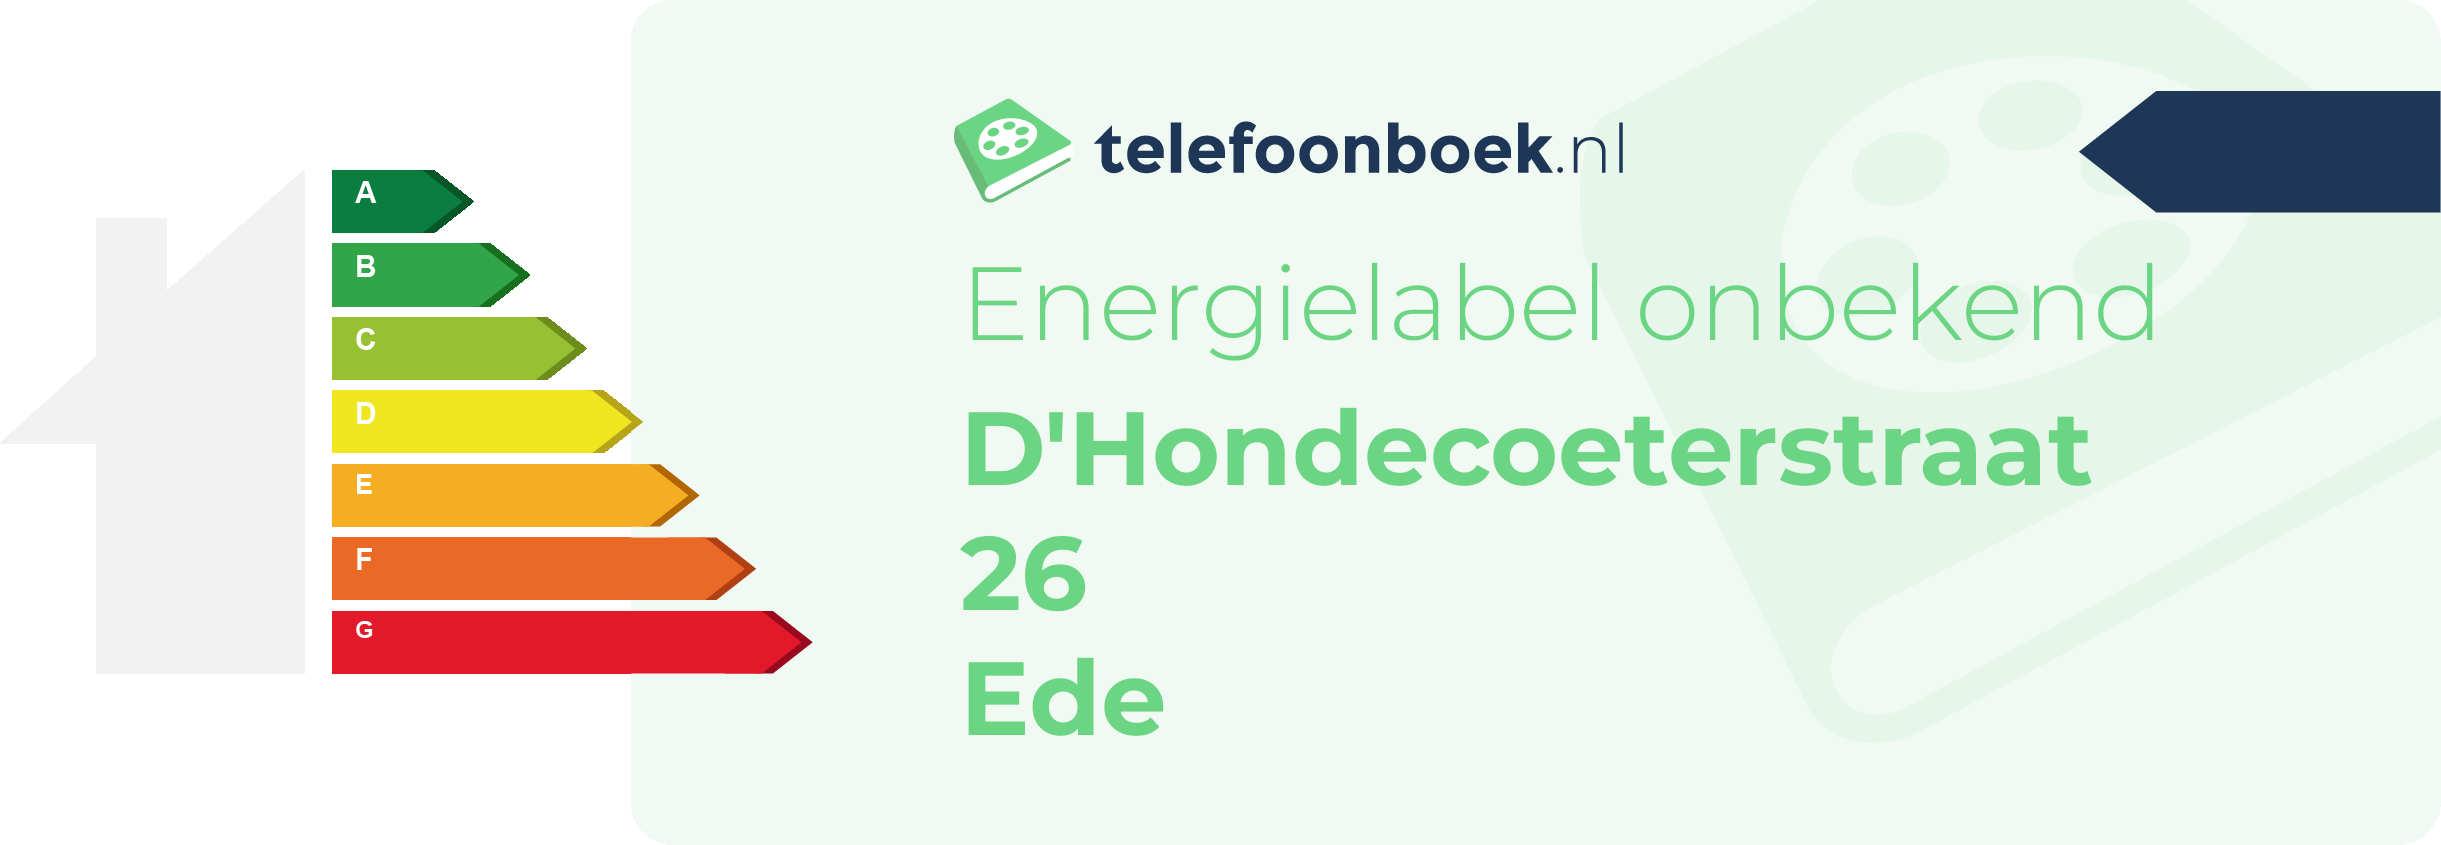 Energielabel D'Hondecoeterstraat 26 Ede